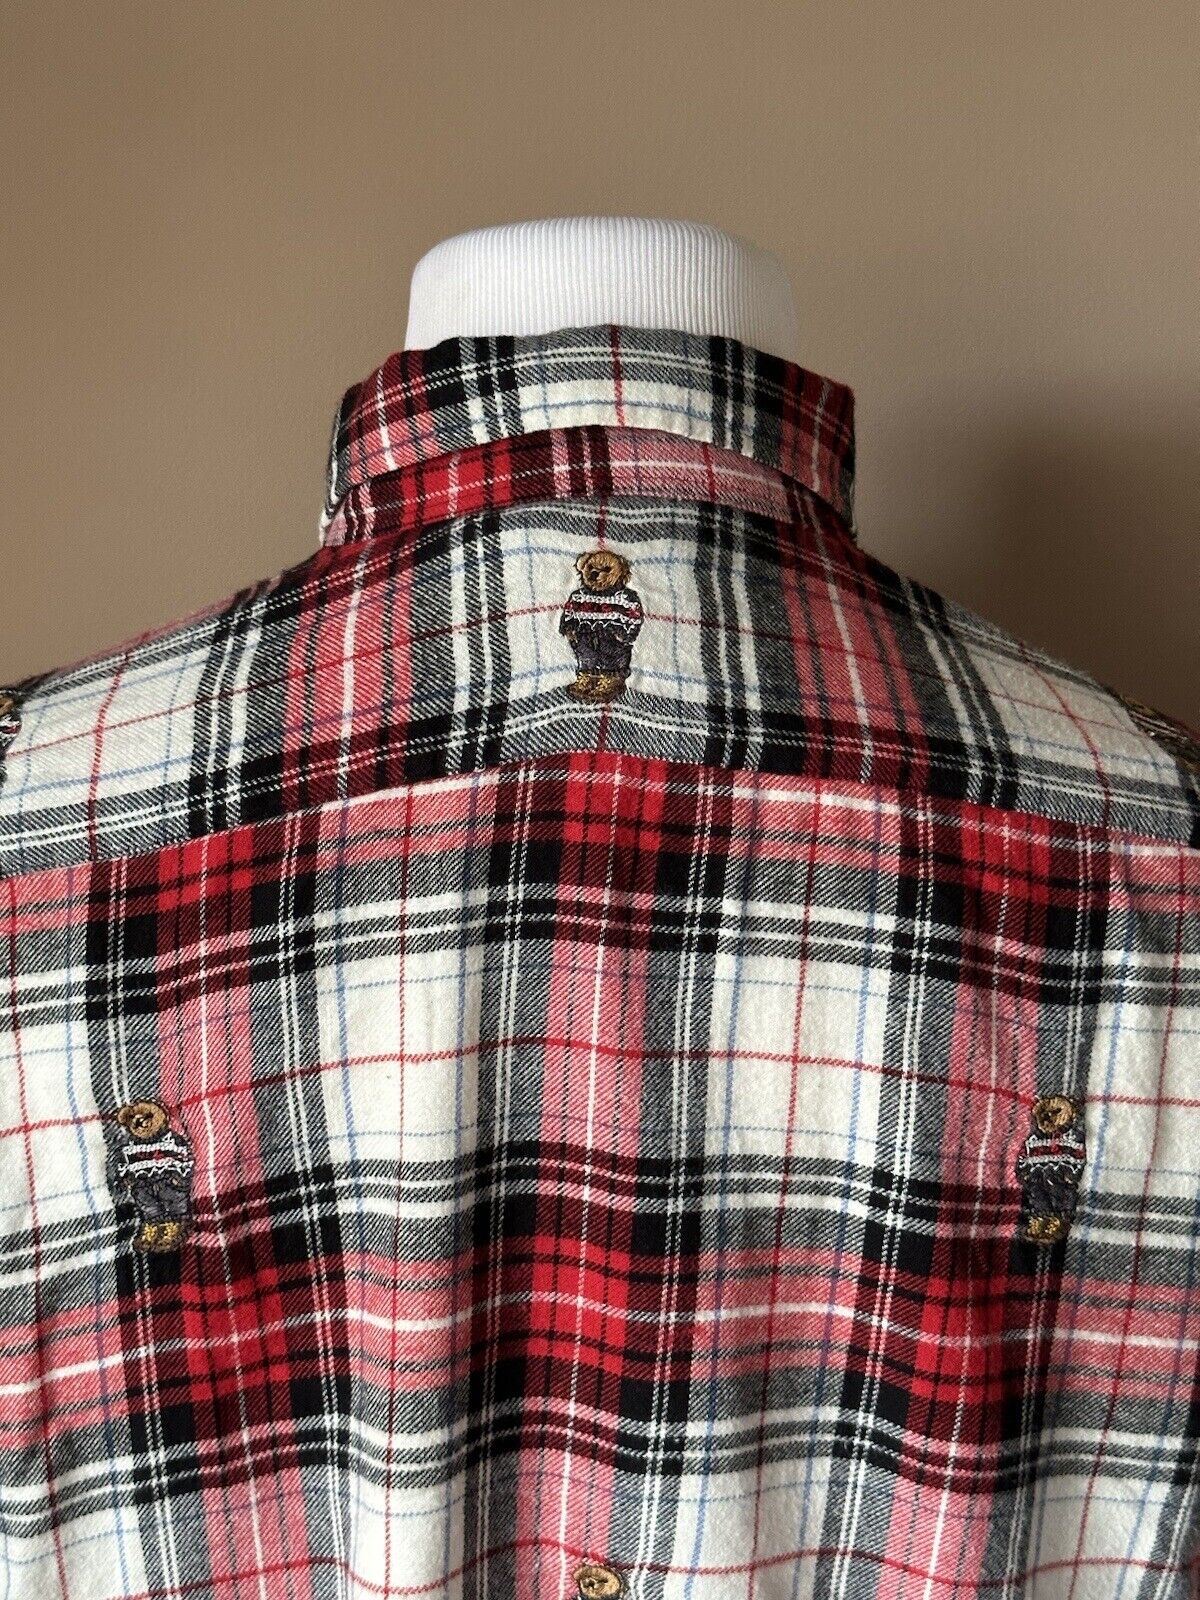 Женская рубашка на пуговицах с медведем, маленькая Polo Ralph Lauren, NWT $198